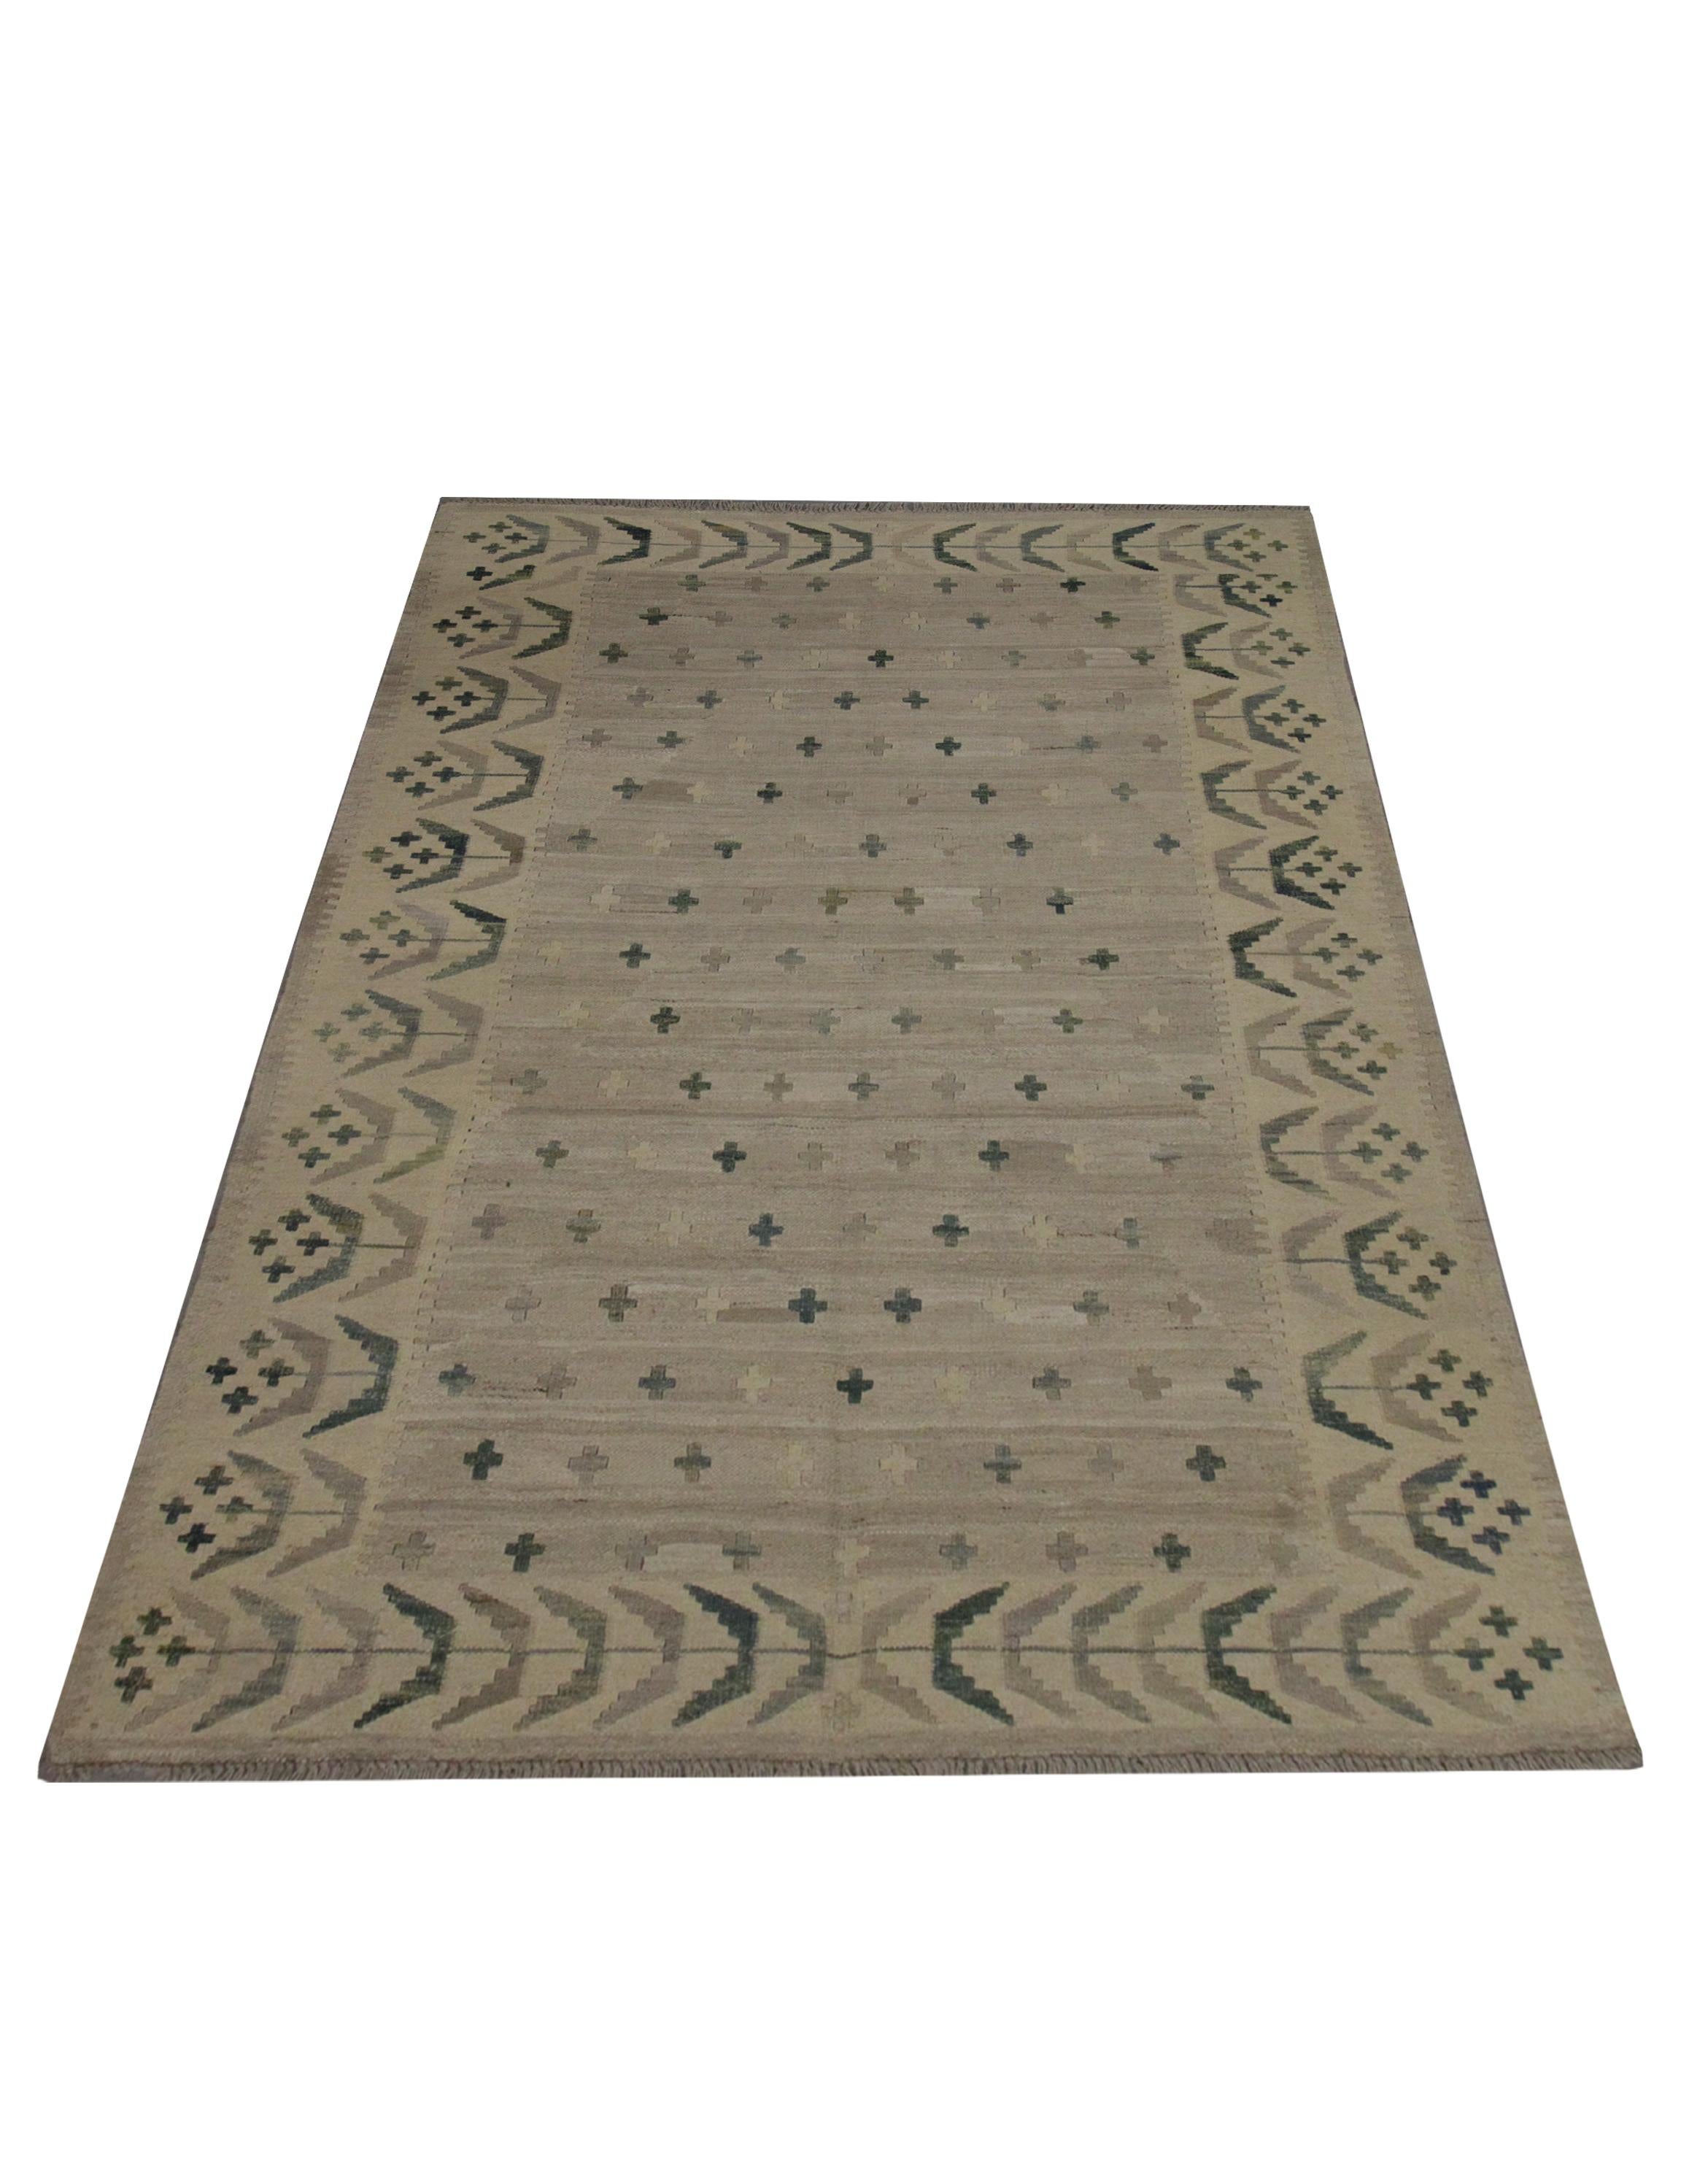 Dieser einzigartige Kilim-Teppich aus Wolle wurde Anfang des 21. Jahrhunderts in Afghanistan gewebt. Das Design zeigt ein einfaches zentrales Design mit einem beigen offenen Feld mit minimalistischen braun-grauen und blauen Kreuzmotiven, die